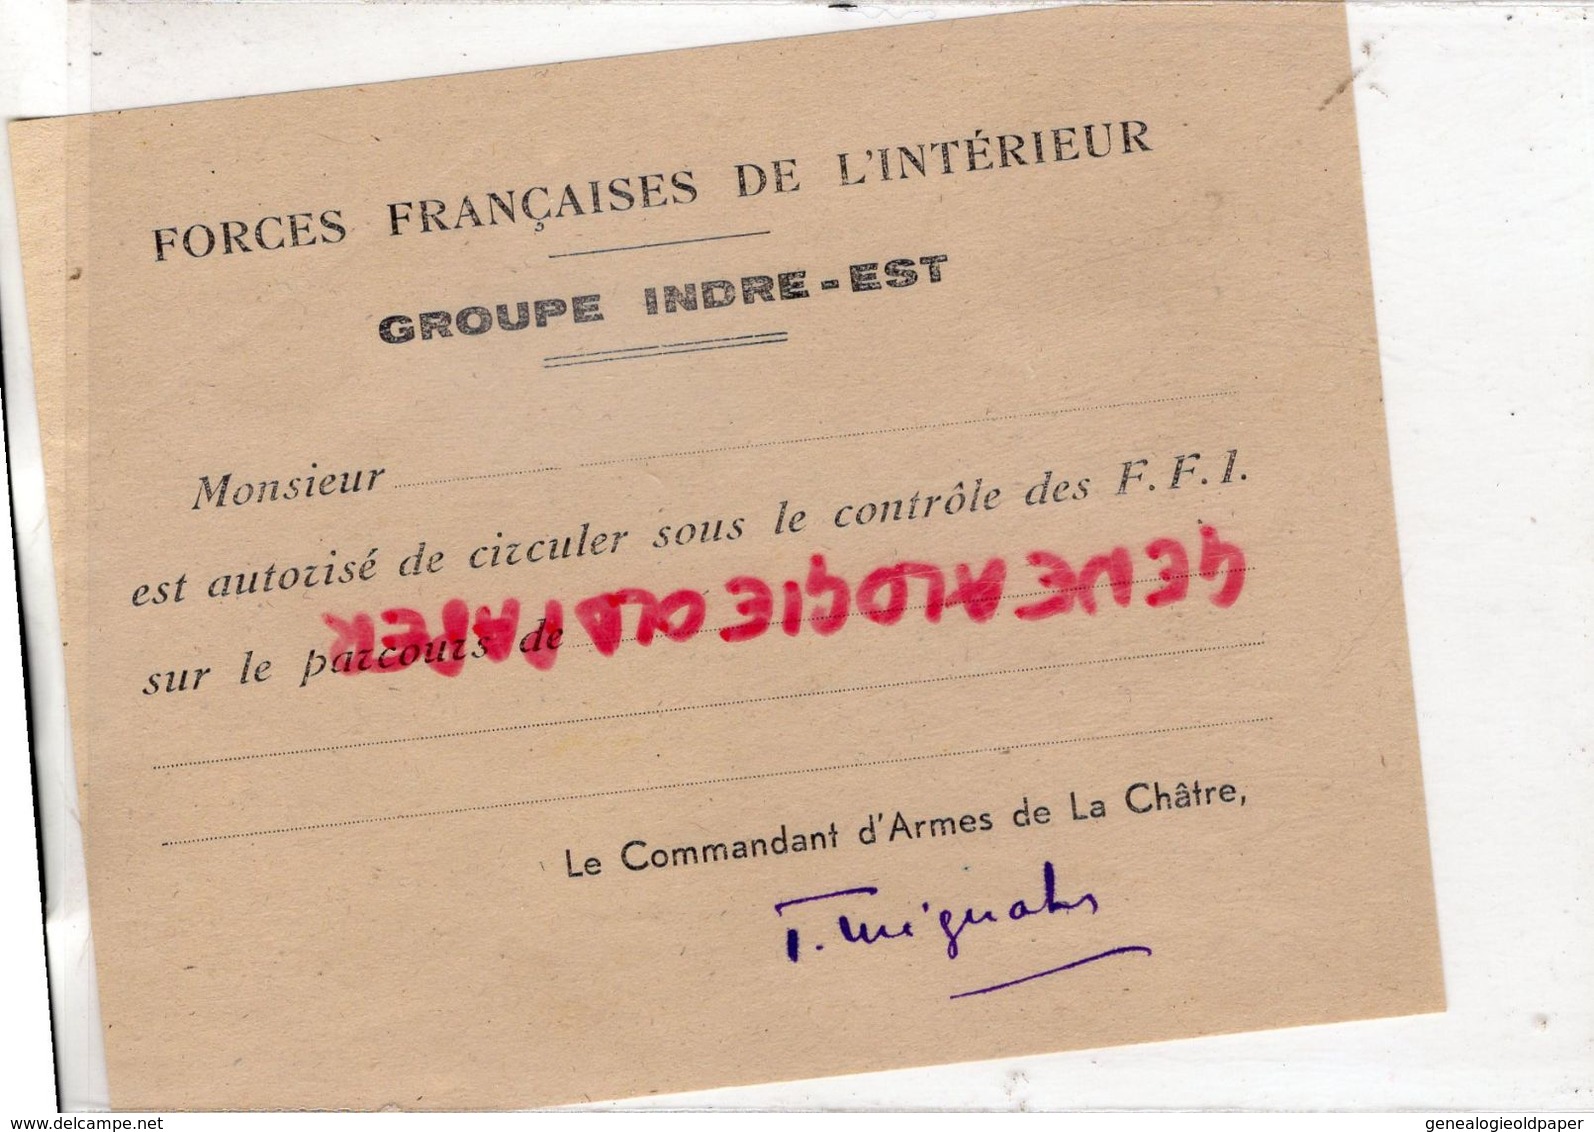 36- LA CHATRE- RARE CARTE FFI-FORCES FRANCAISES INTERIEUR-GUERRE 1939-1945- GROUPE INDRE EST- RESISTANCE LIBERATION - 1939-45